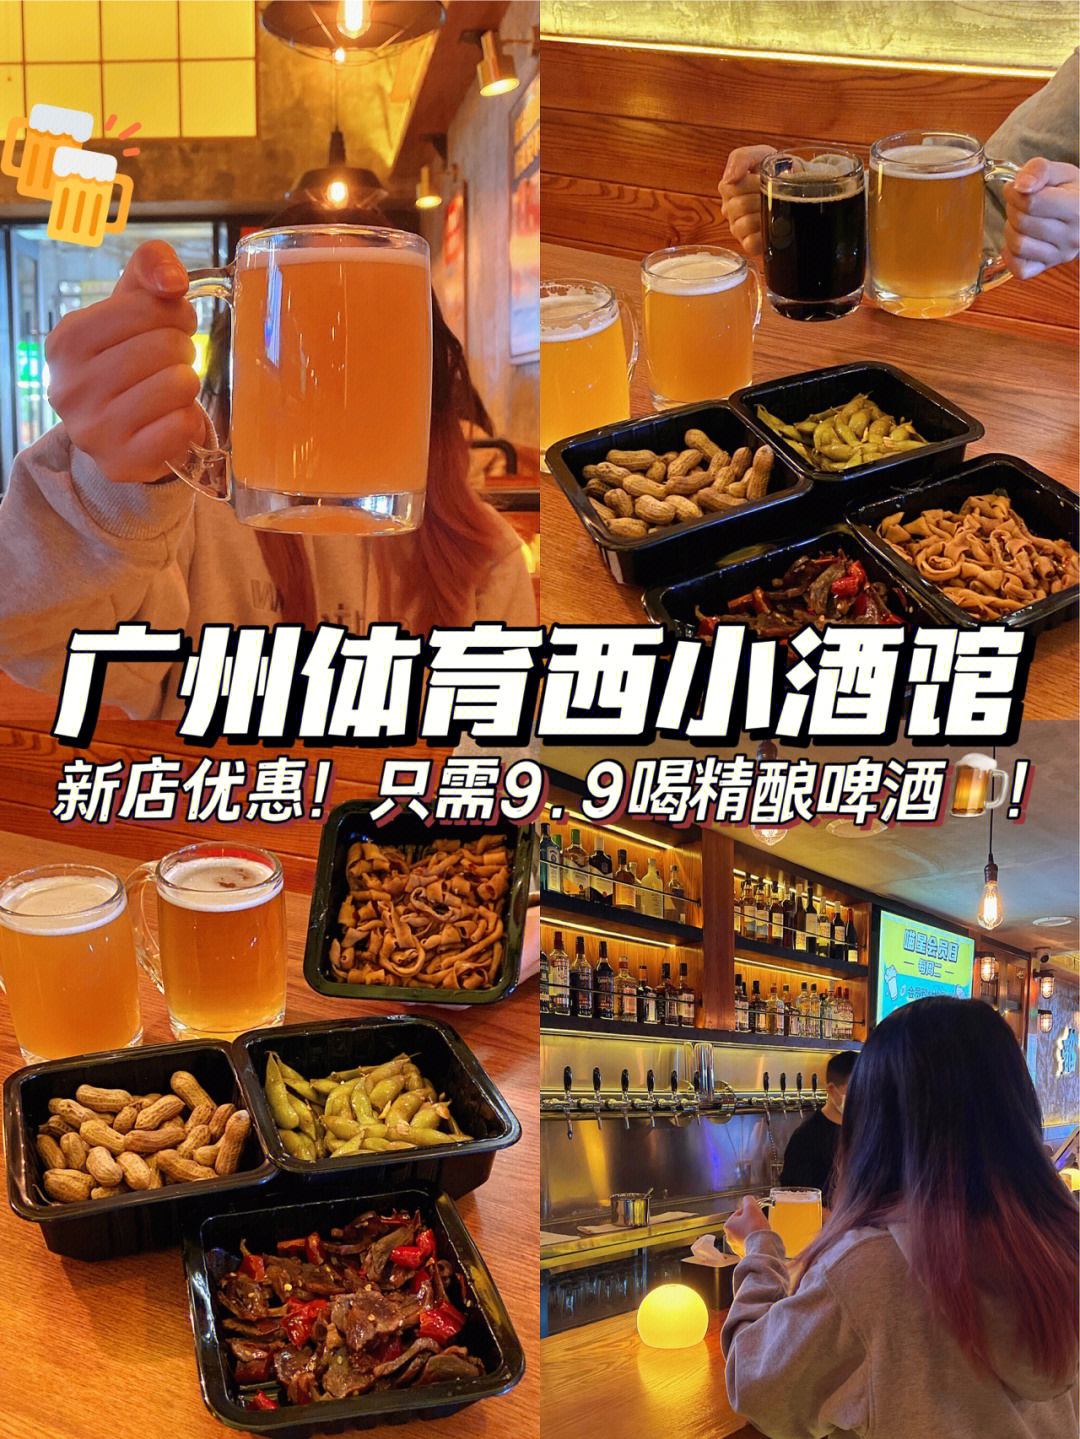 广州新晋小酒馆限时99喝精酿啤酒